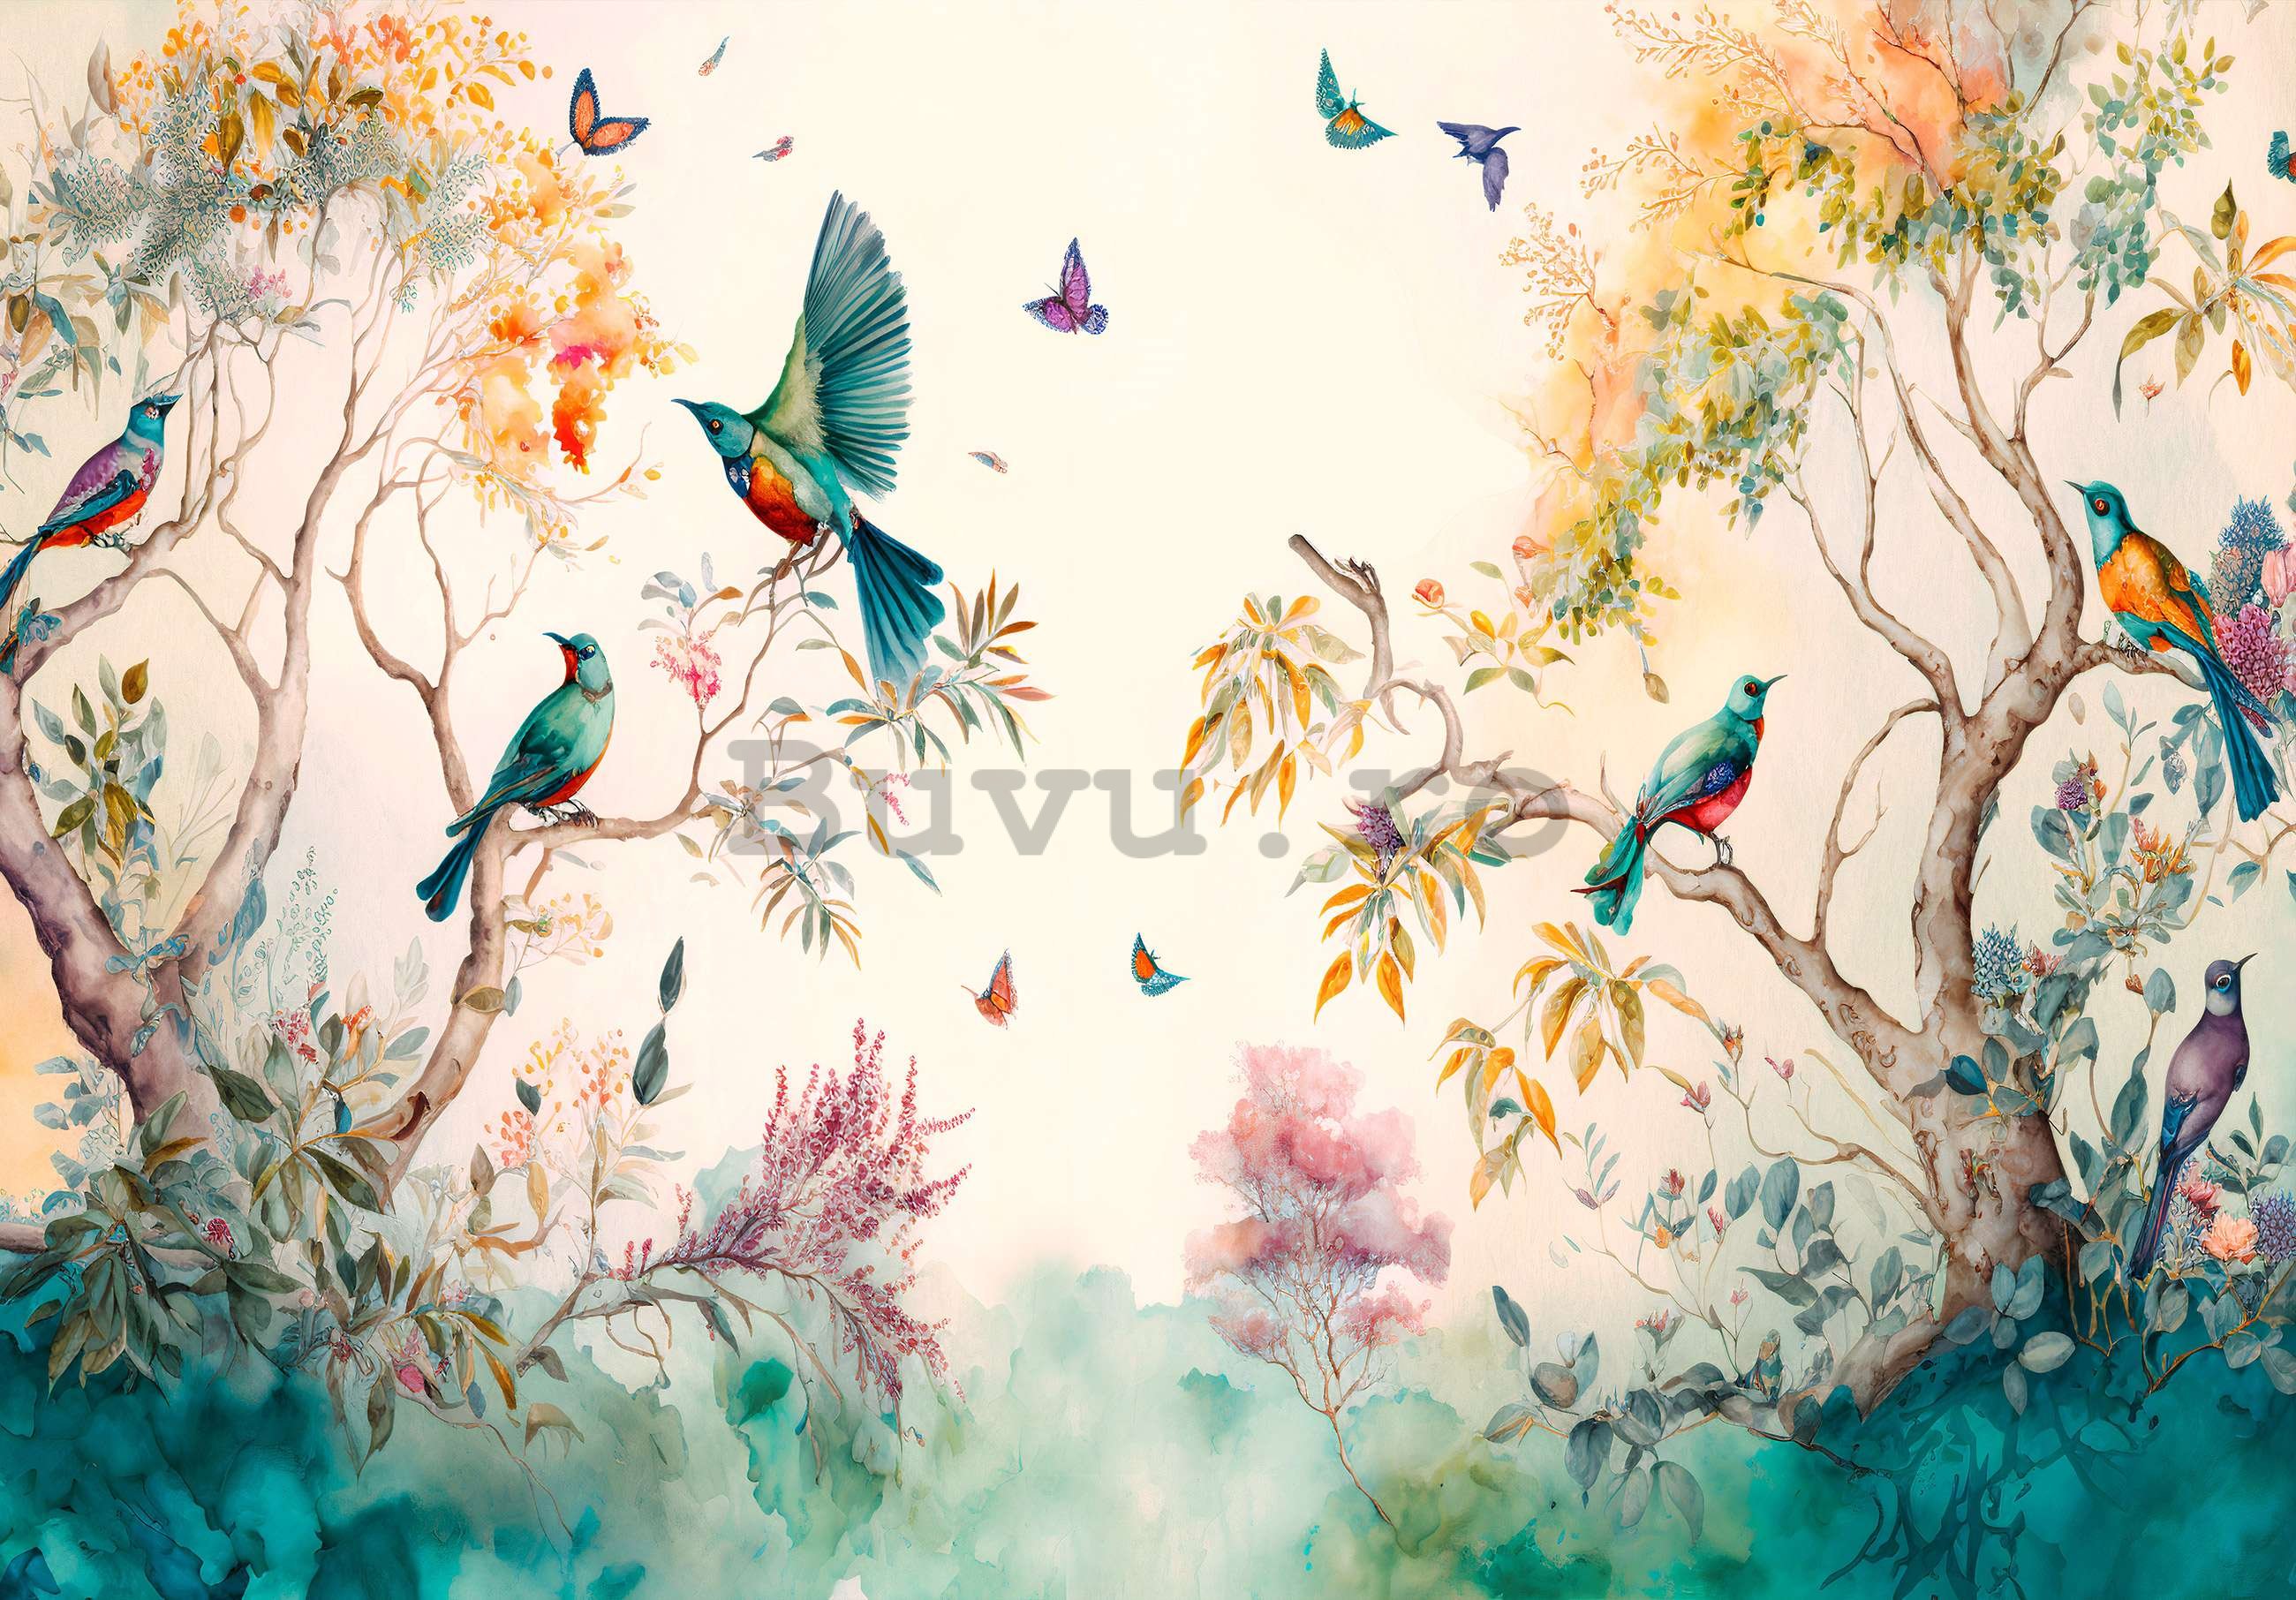 Fototapet vlies: Păsări în copaci (pictate) - 254x184 cm